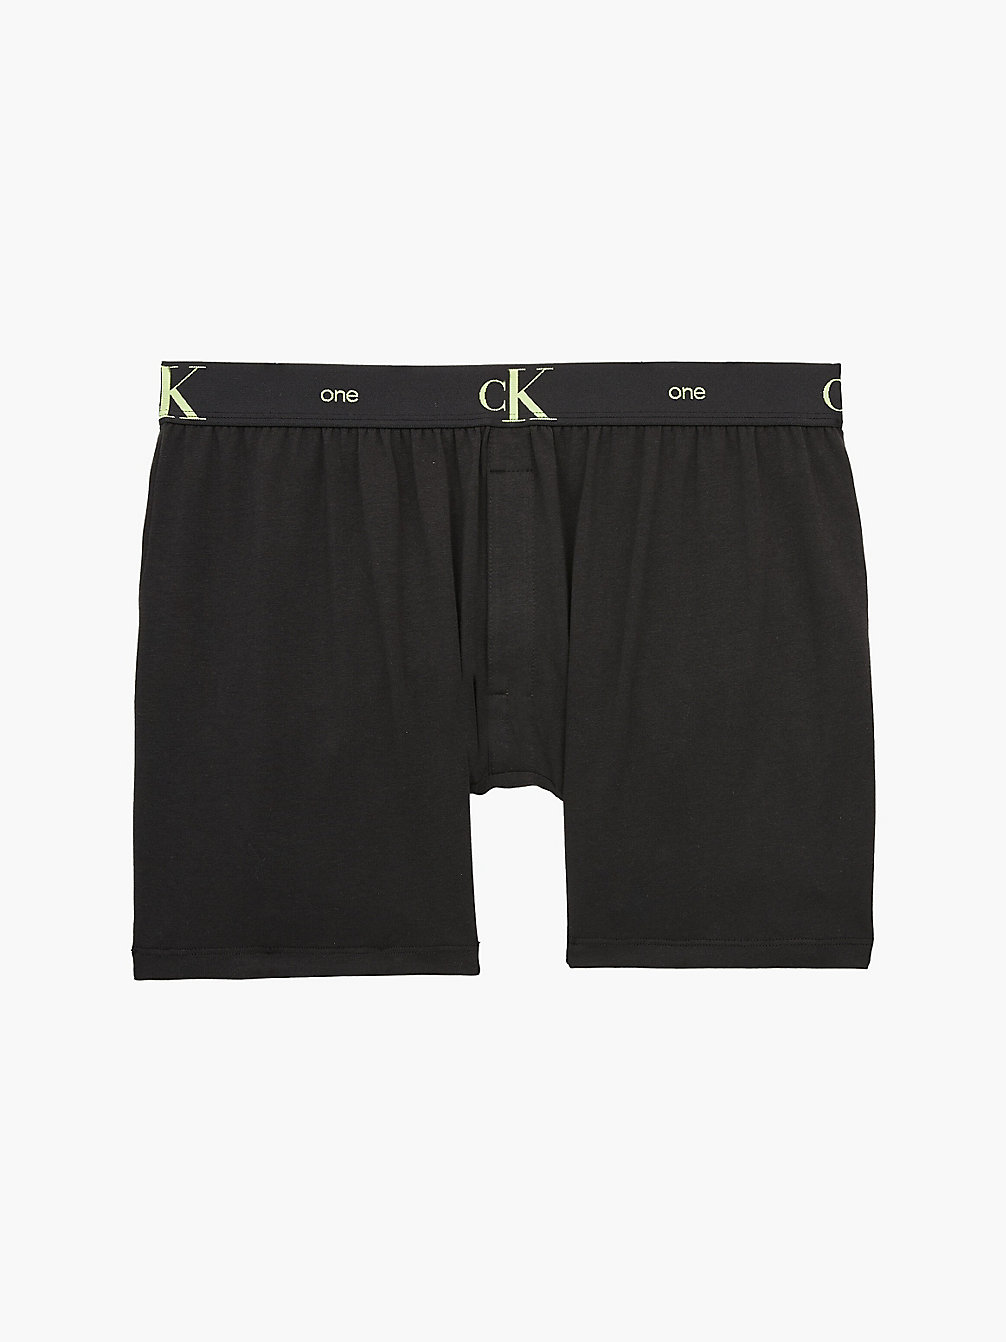 BLACK Slim Fit Boxershorts – CK One undefined Herren Calvin Klein